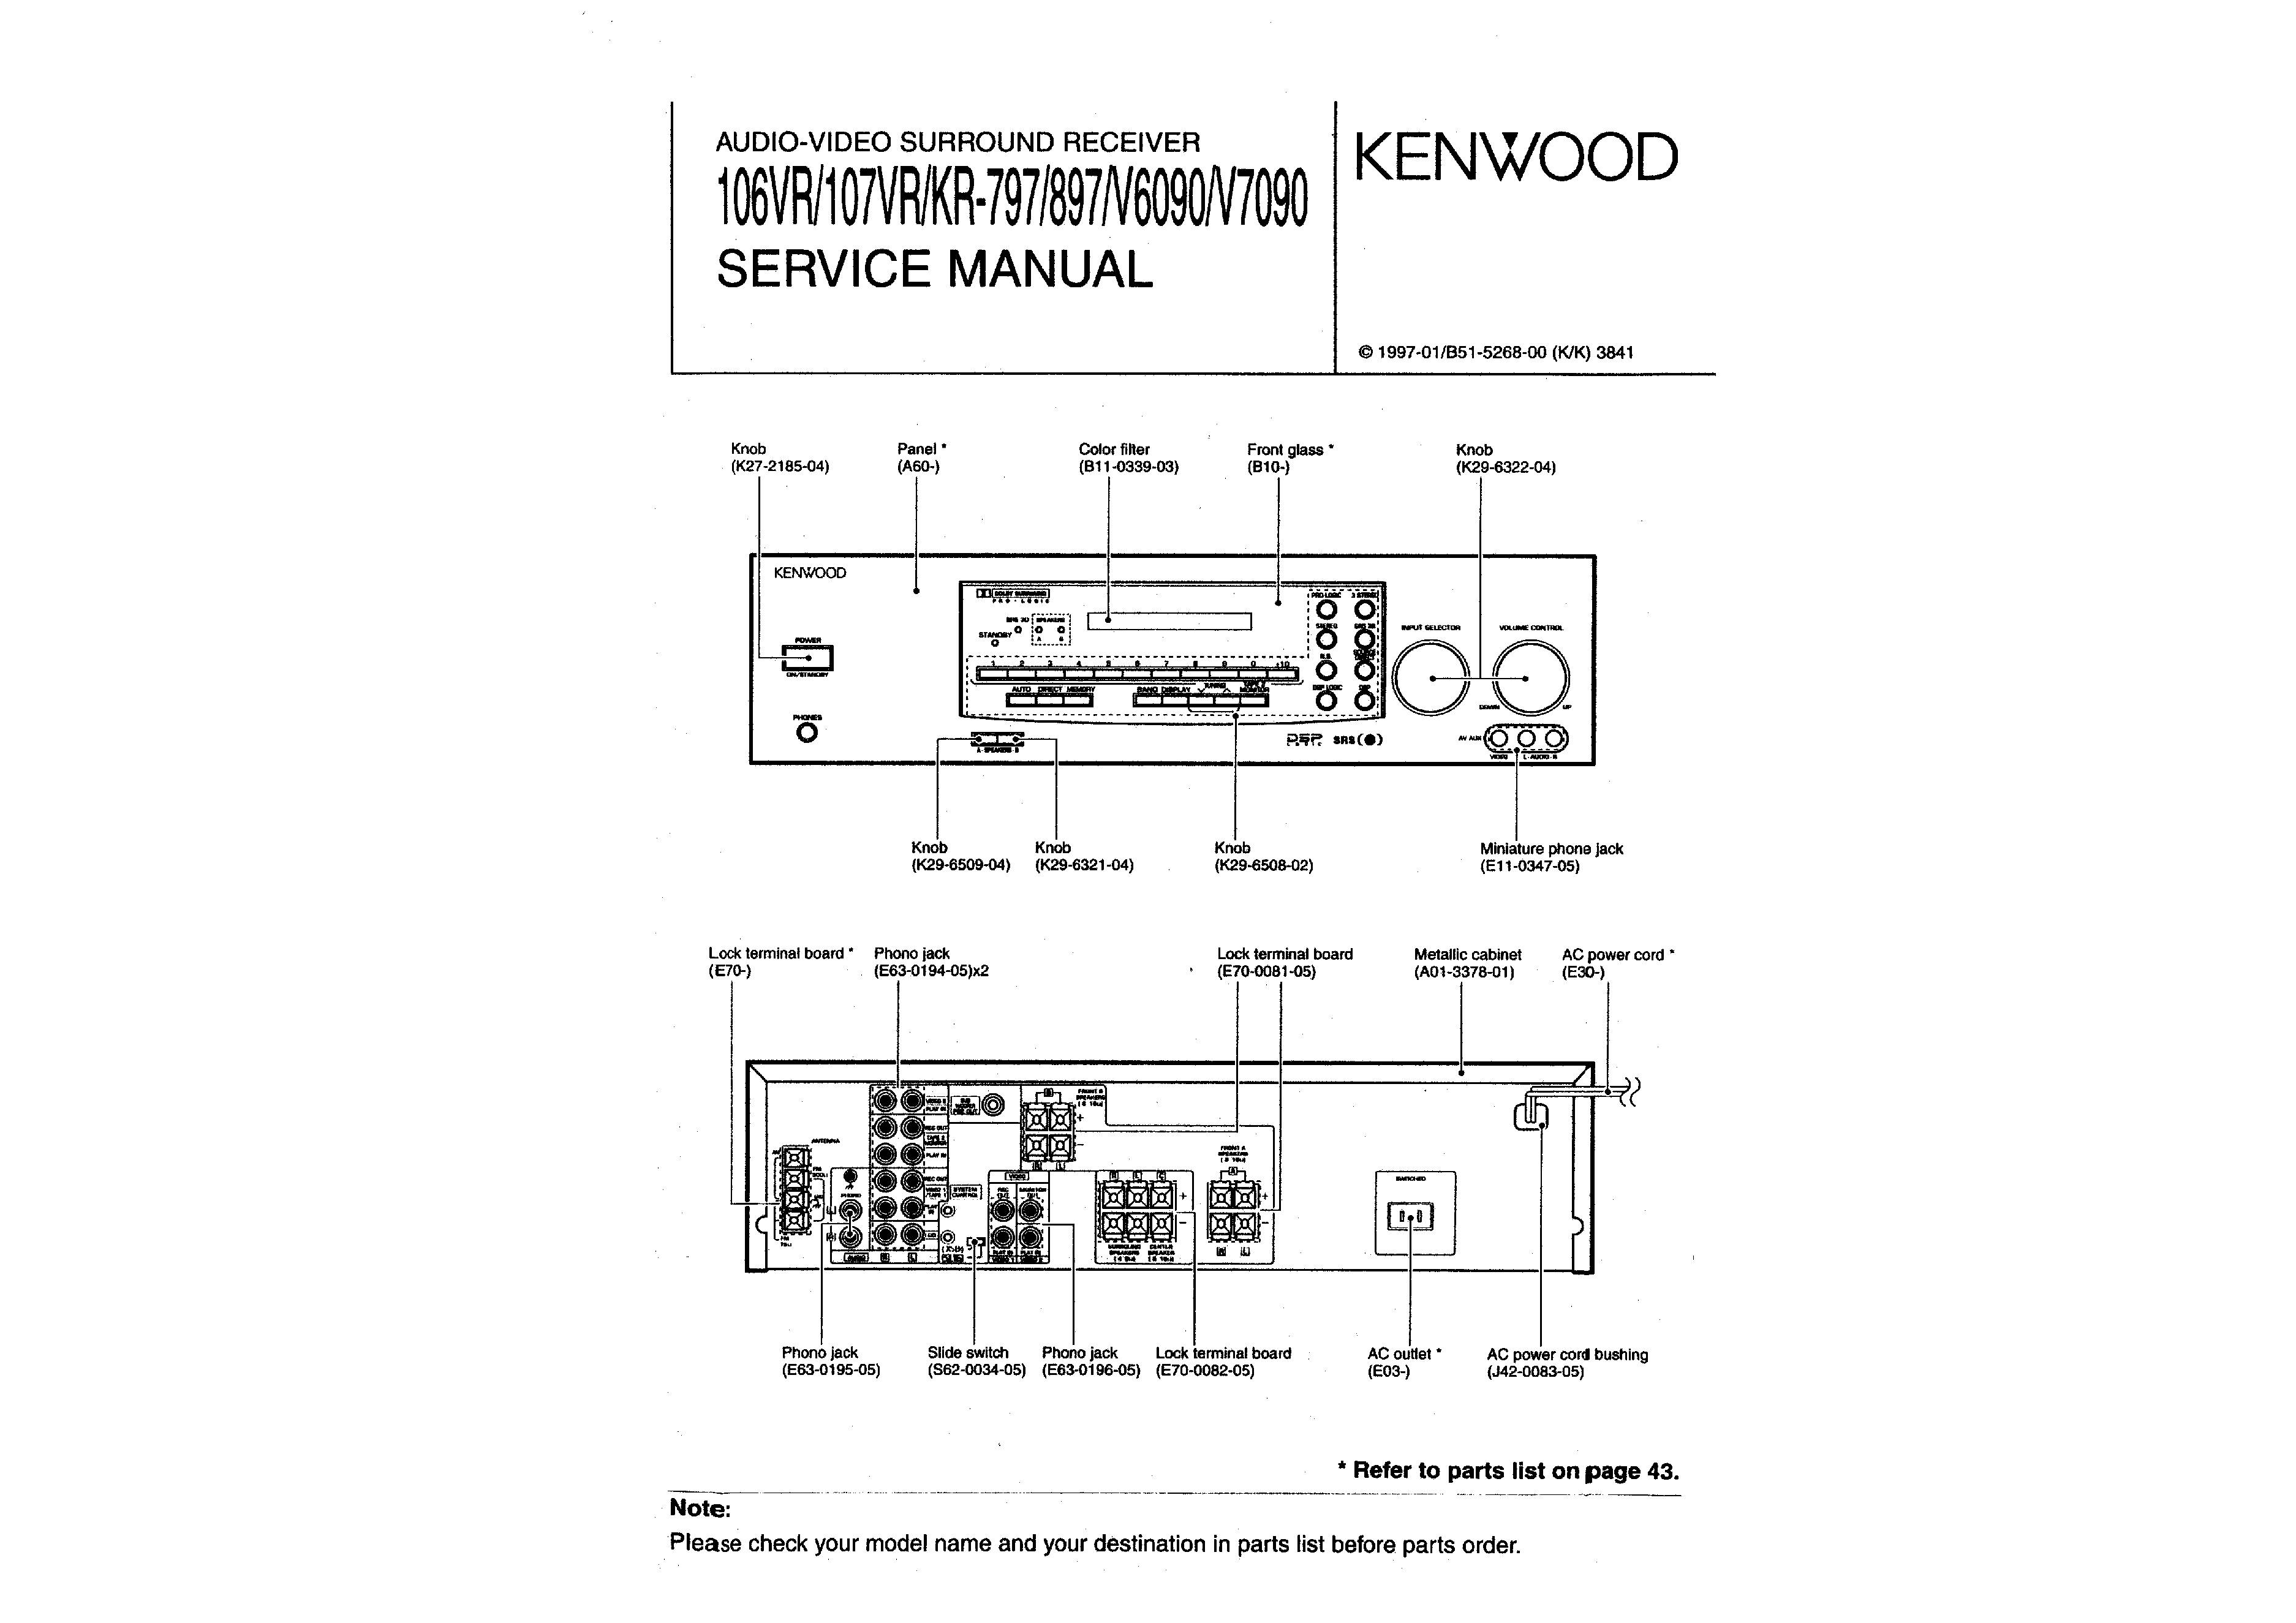 Kenwood KR-V6090